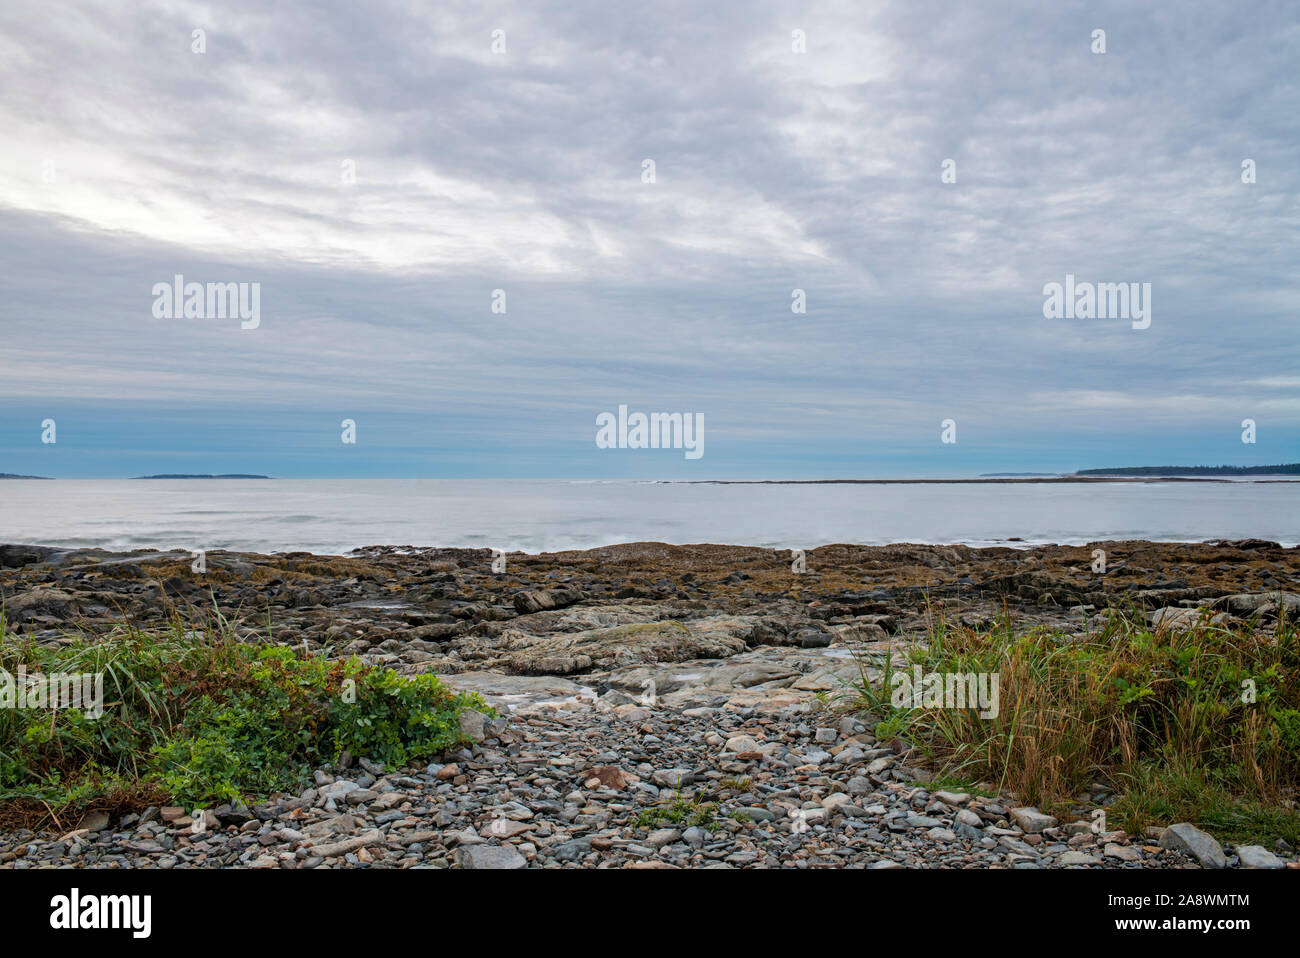 Alba sull'Oceano Atlantico. Parco Nazionale di Acadia, Maine, Stati Uniti d'America. Seawall Area. Foto Stock